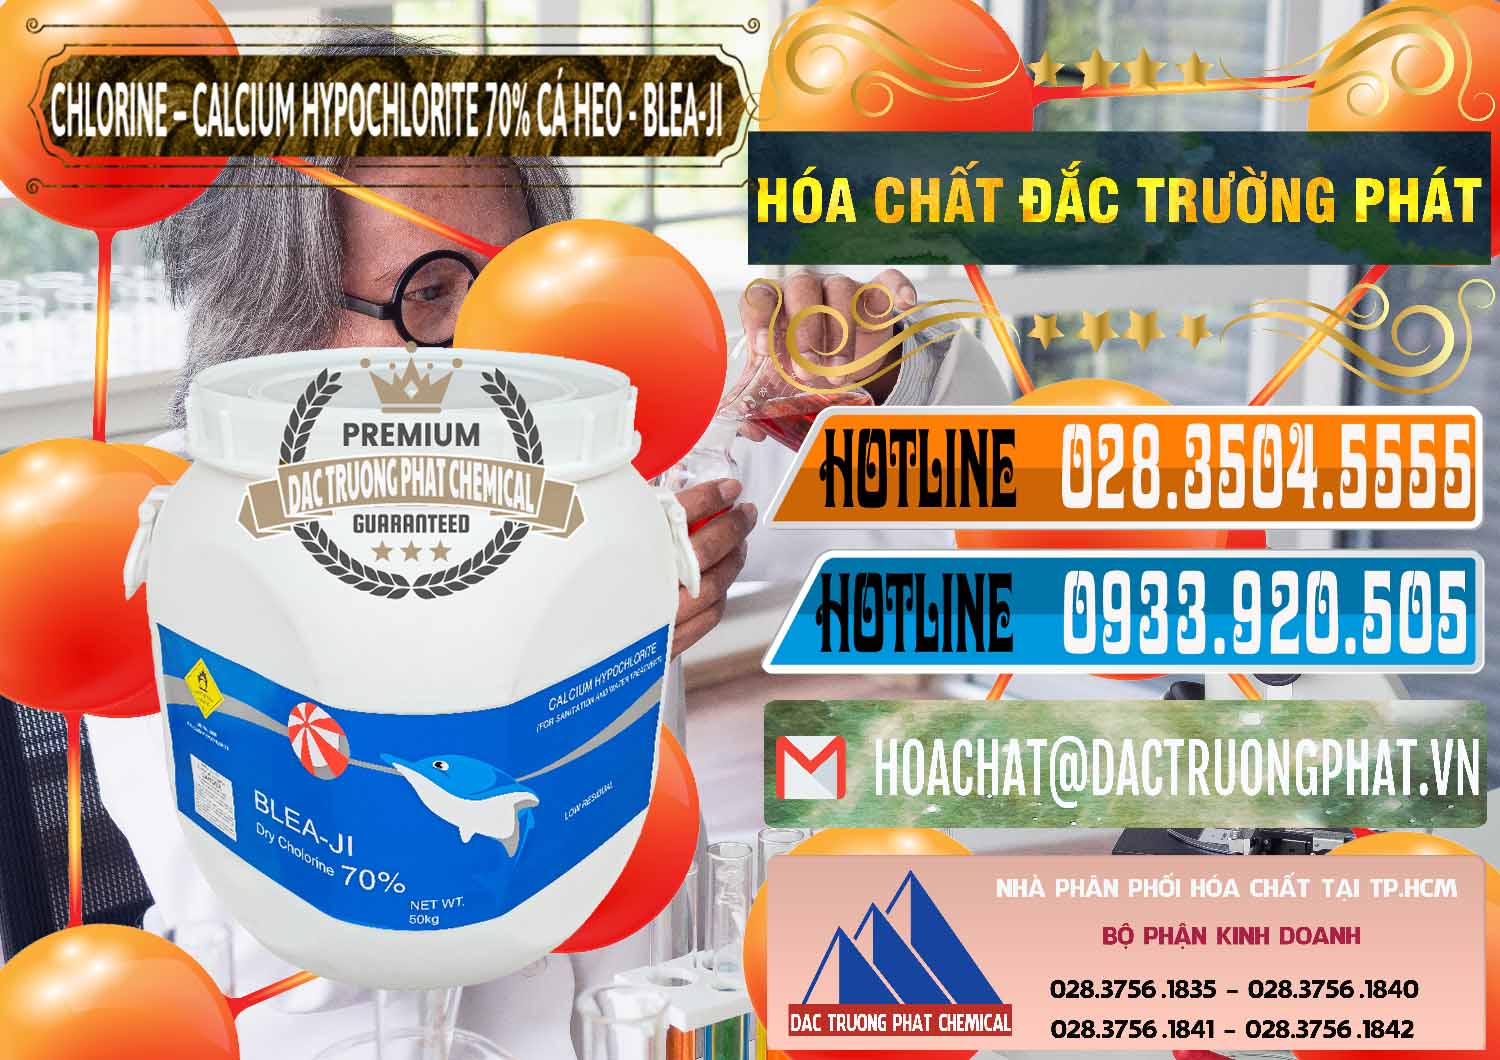 Cty chuyên bán _ phân phối Clorin - Chlorine Cá Heo 70% Blea-Ji Trung Quốc China - 0056 - Nhà nhập khẩu _ cung cấp hóa chất tại TP.HCM - stmp.net